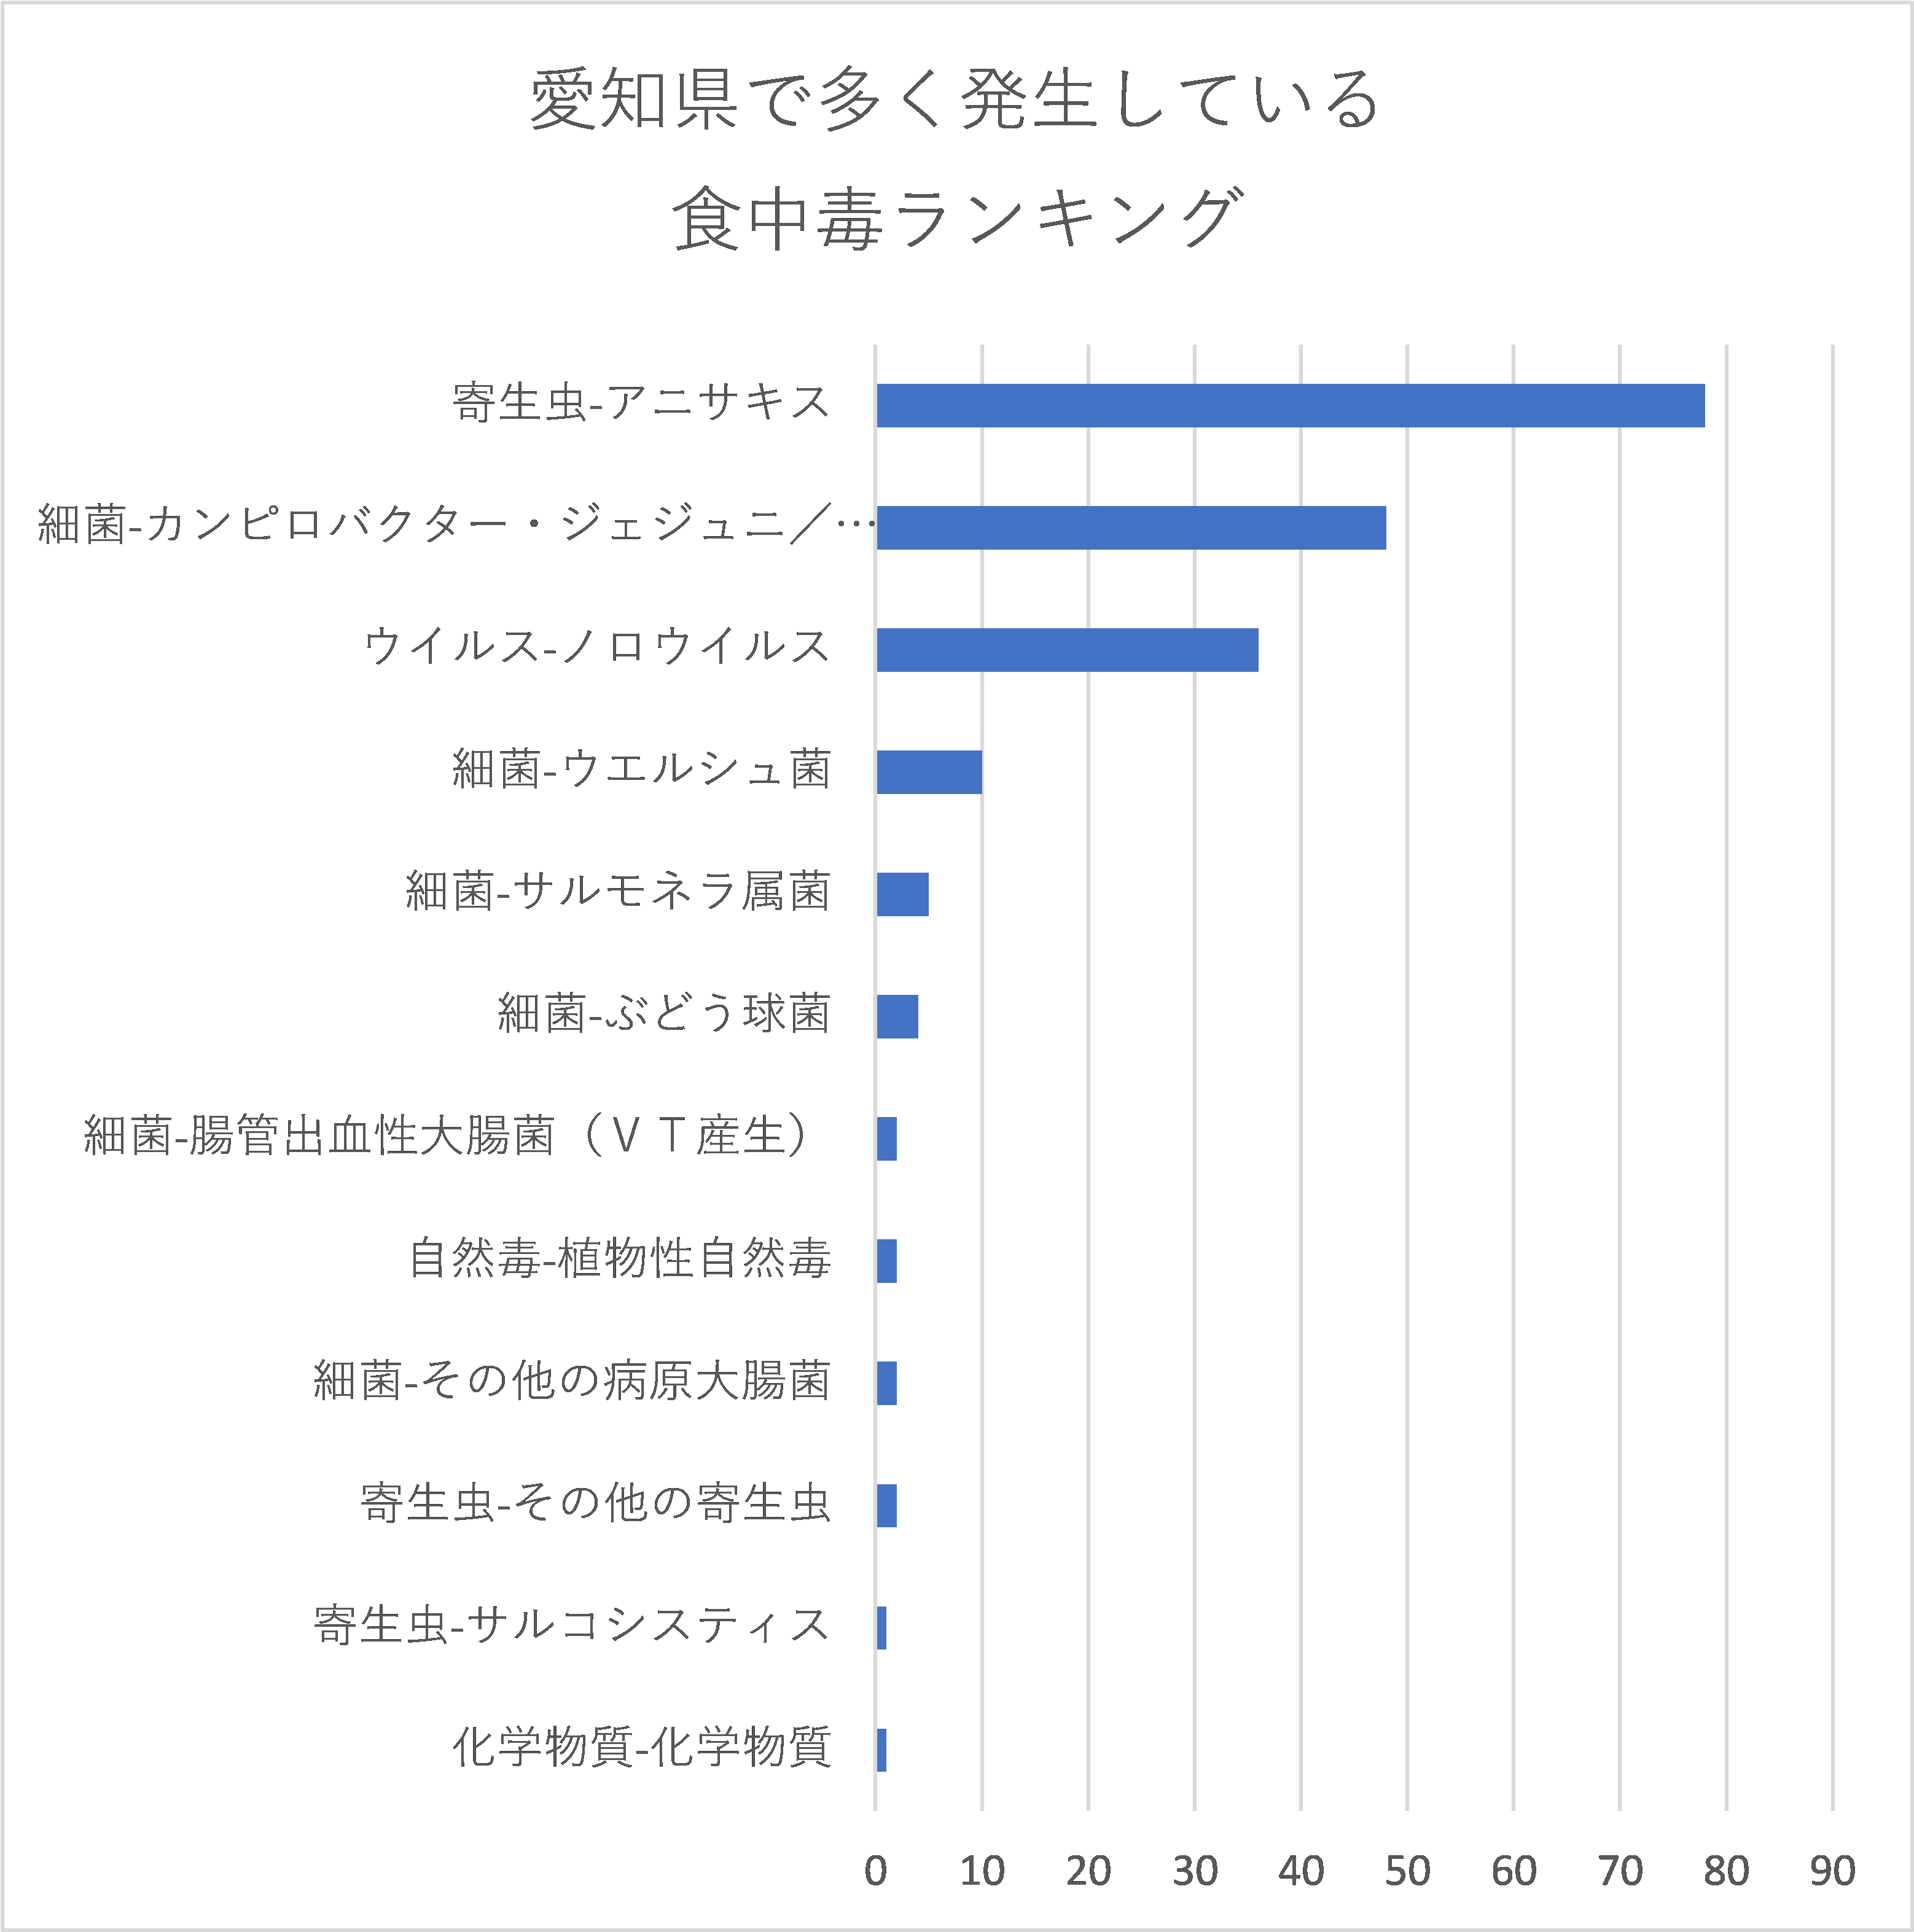 愛知県で多く発生している食中毒ランキング